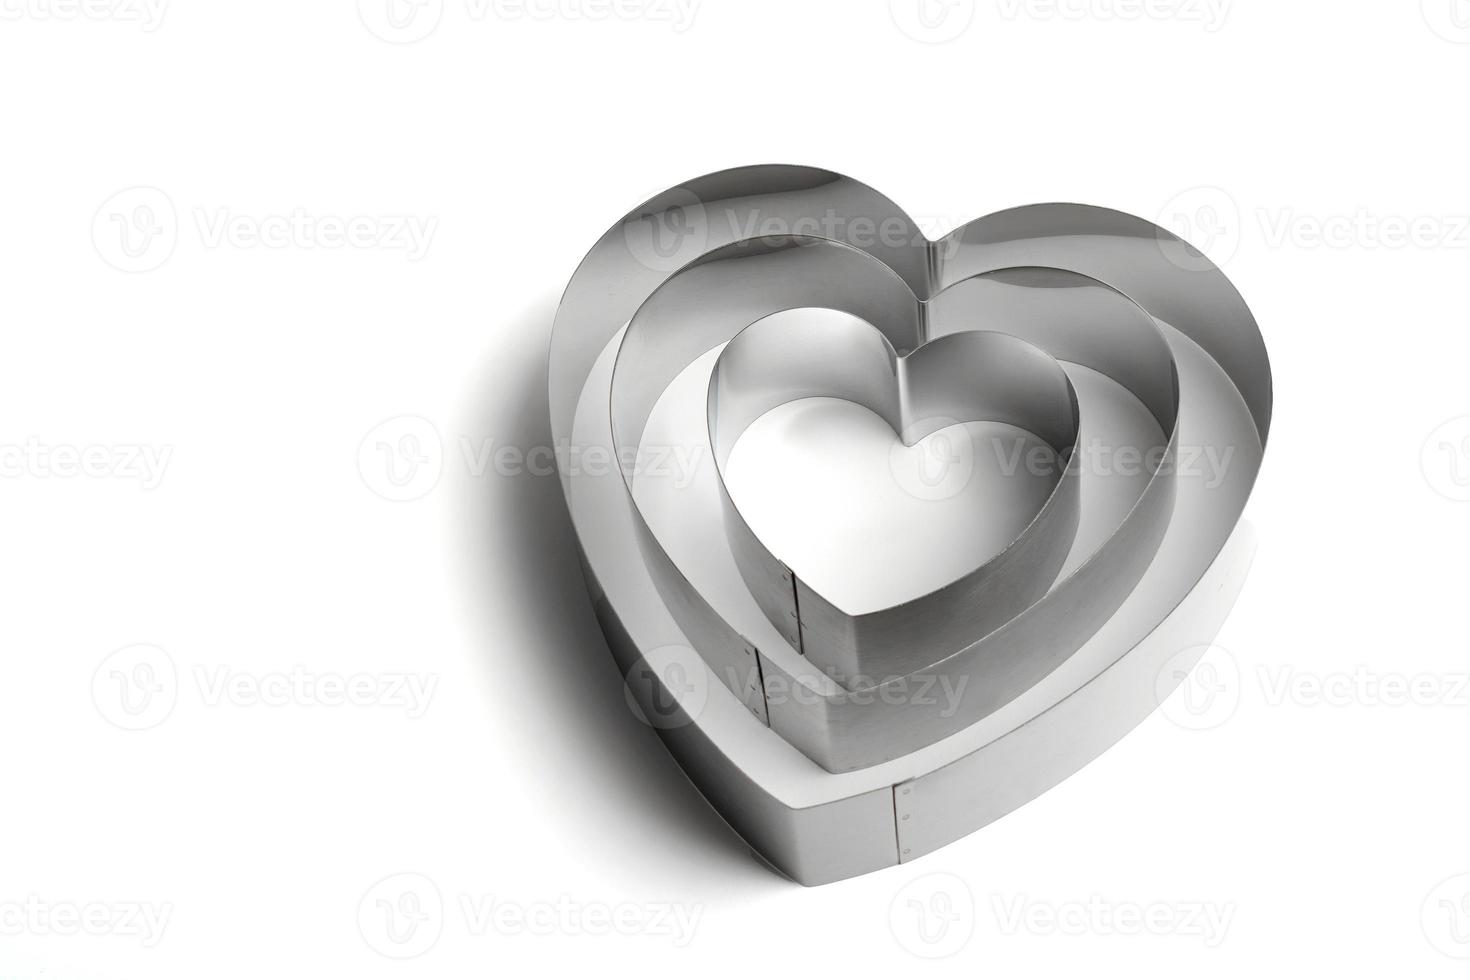 molde de metal em forma de coração em um fundo branco. foto